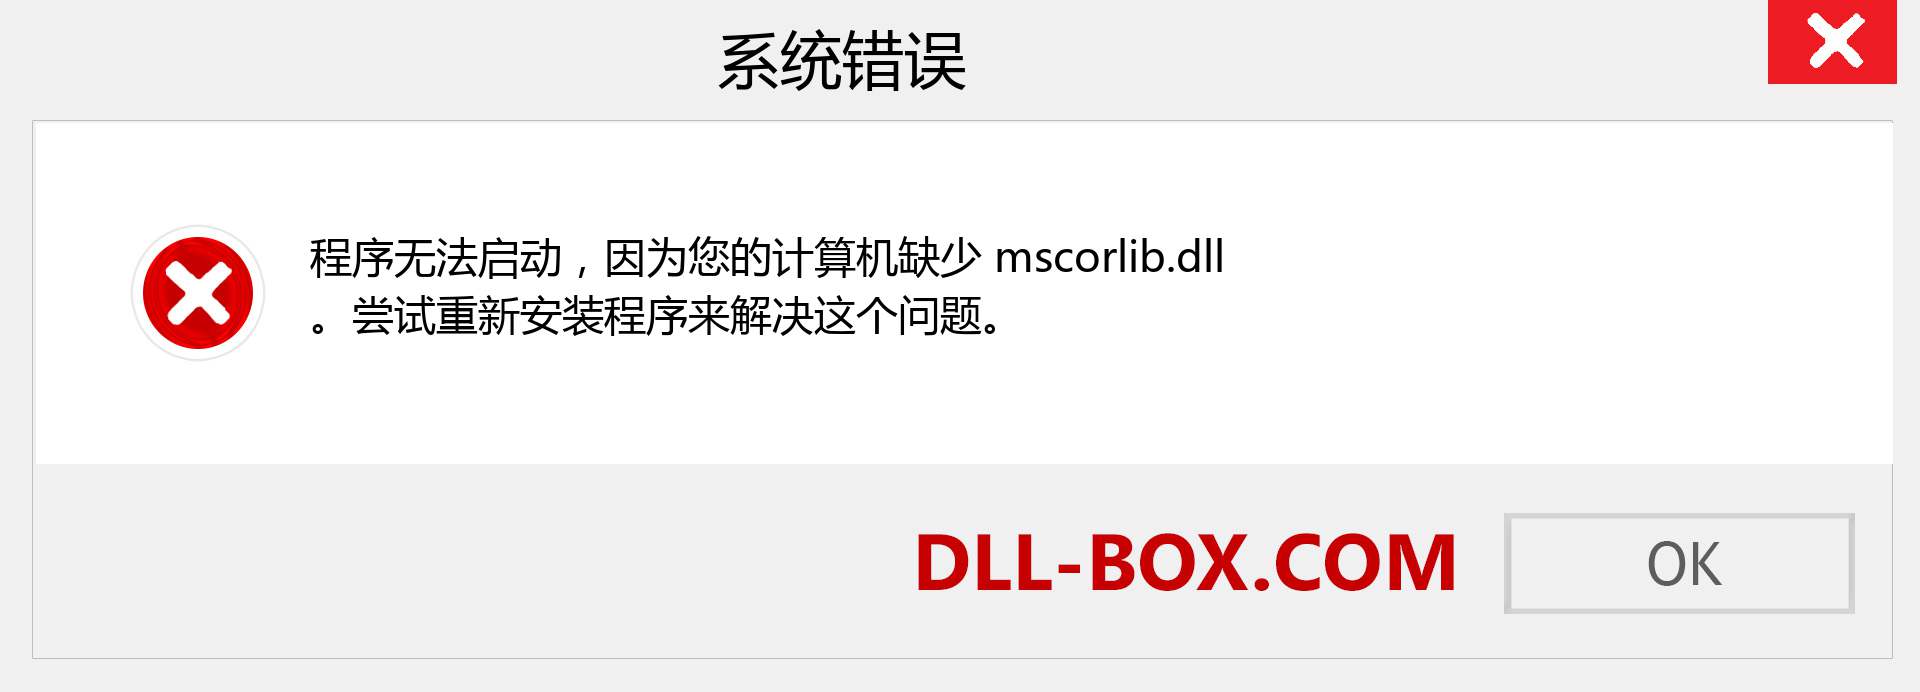 mscorlib.dll 文件丢失？。 适用于 Windows 7、8、10 的下载 - 修复 Windows、照片、图像上的 mscorlib dll 丢失错误